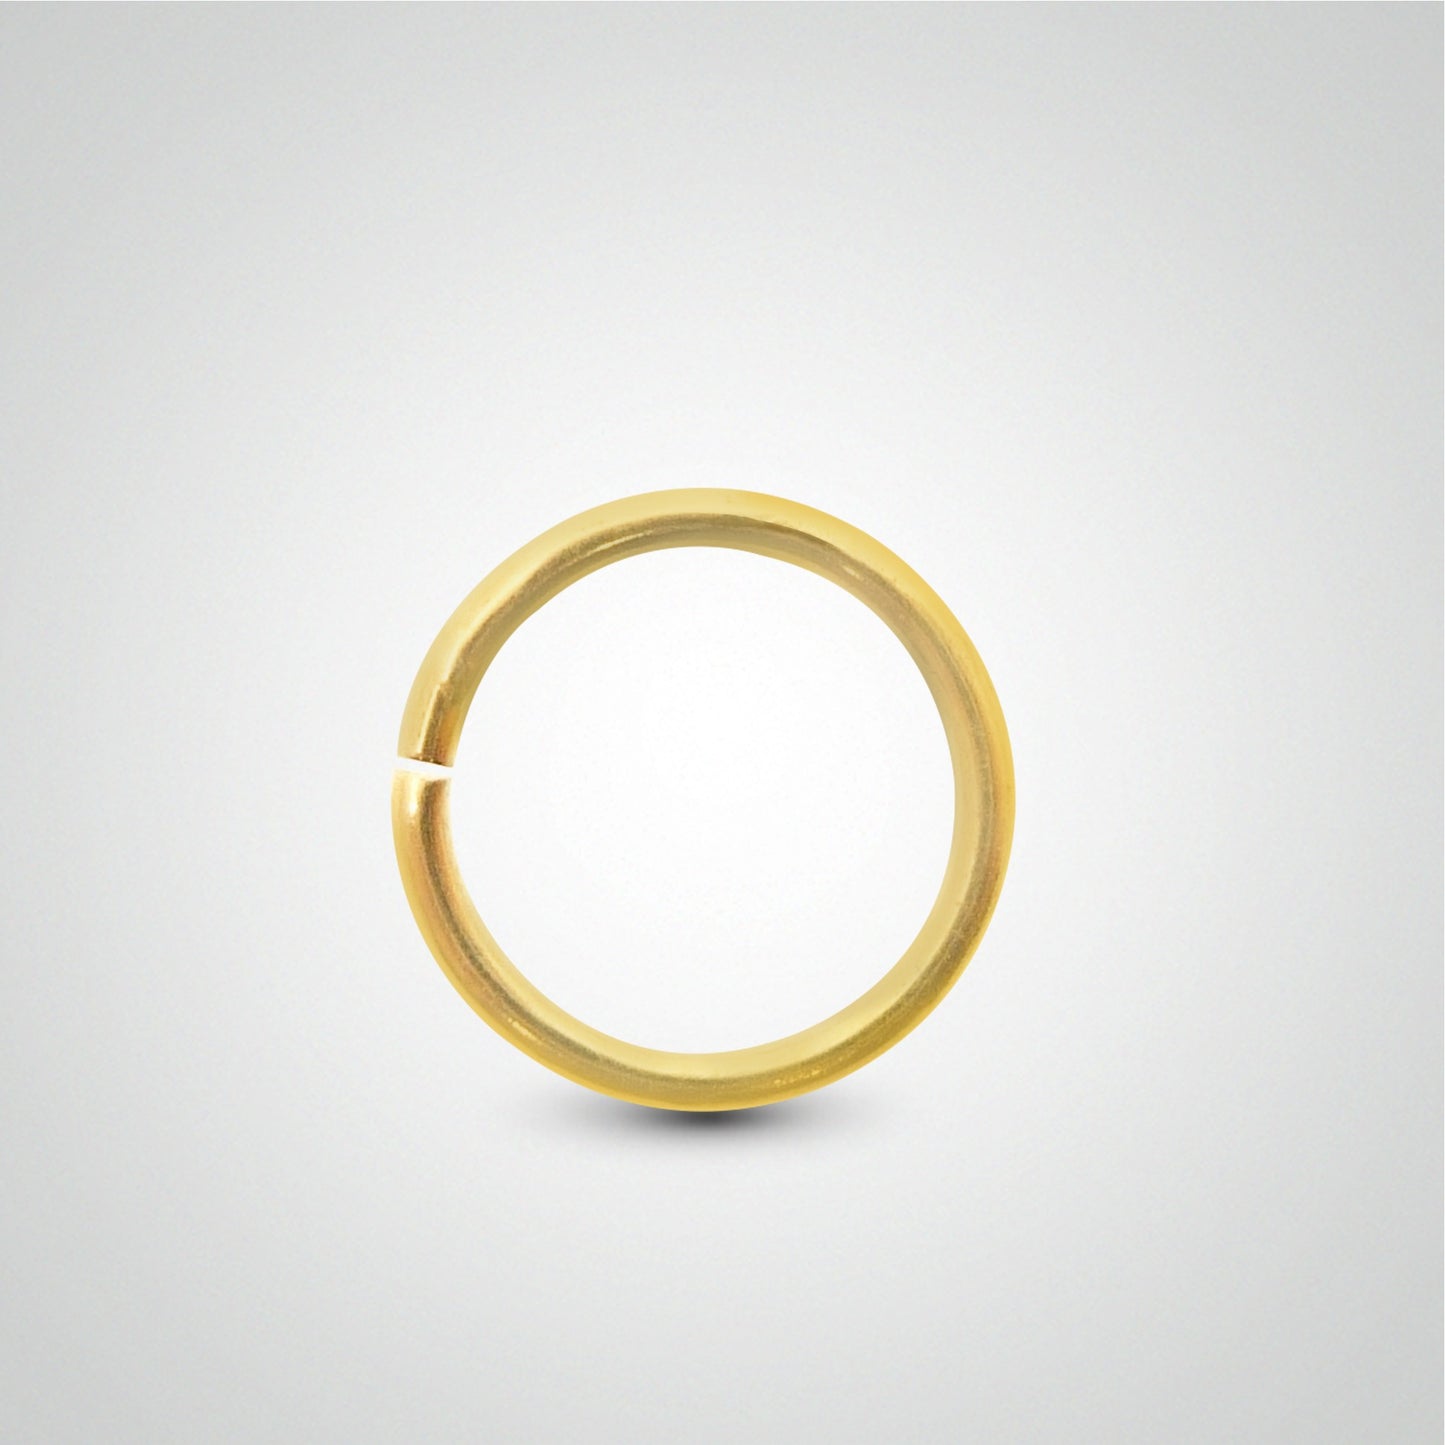 Piercing d'antihélix anneau en or jaune à écarter